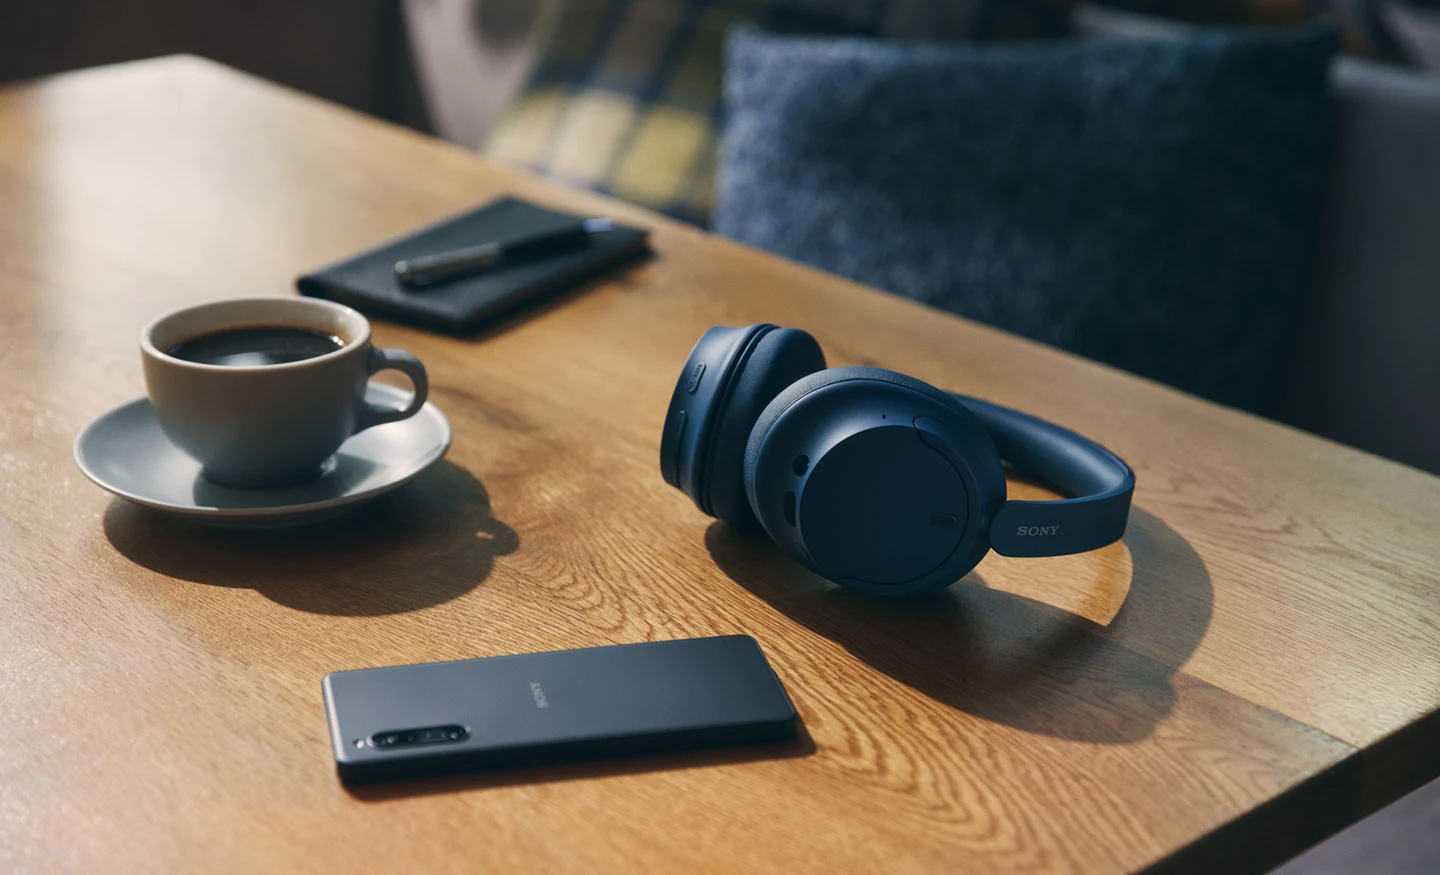 Sony wprowadziło do sprzedaży pełnowymiarowe aktywne słuchawki z redukcją szumów WH-CH720N w cenie 100 zł